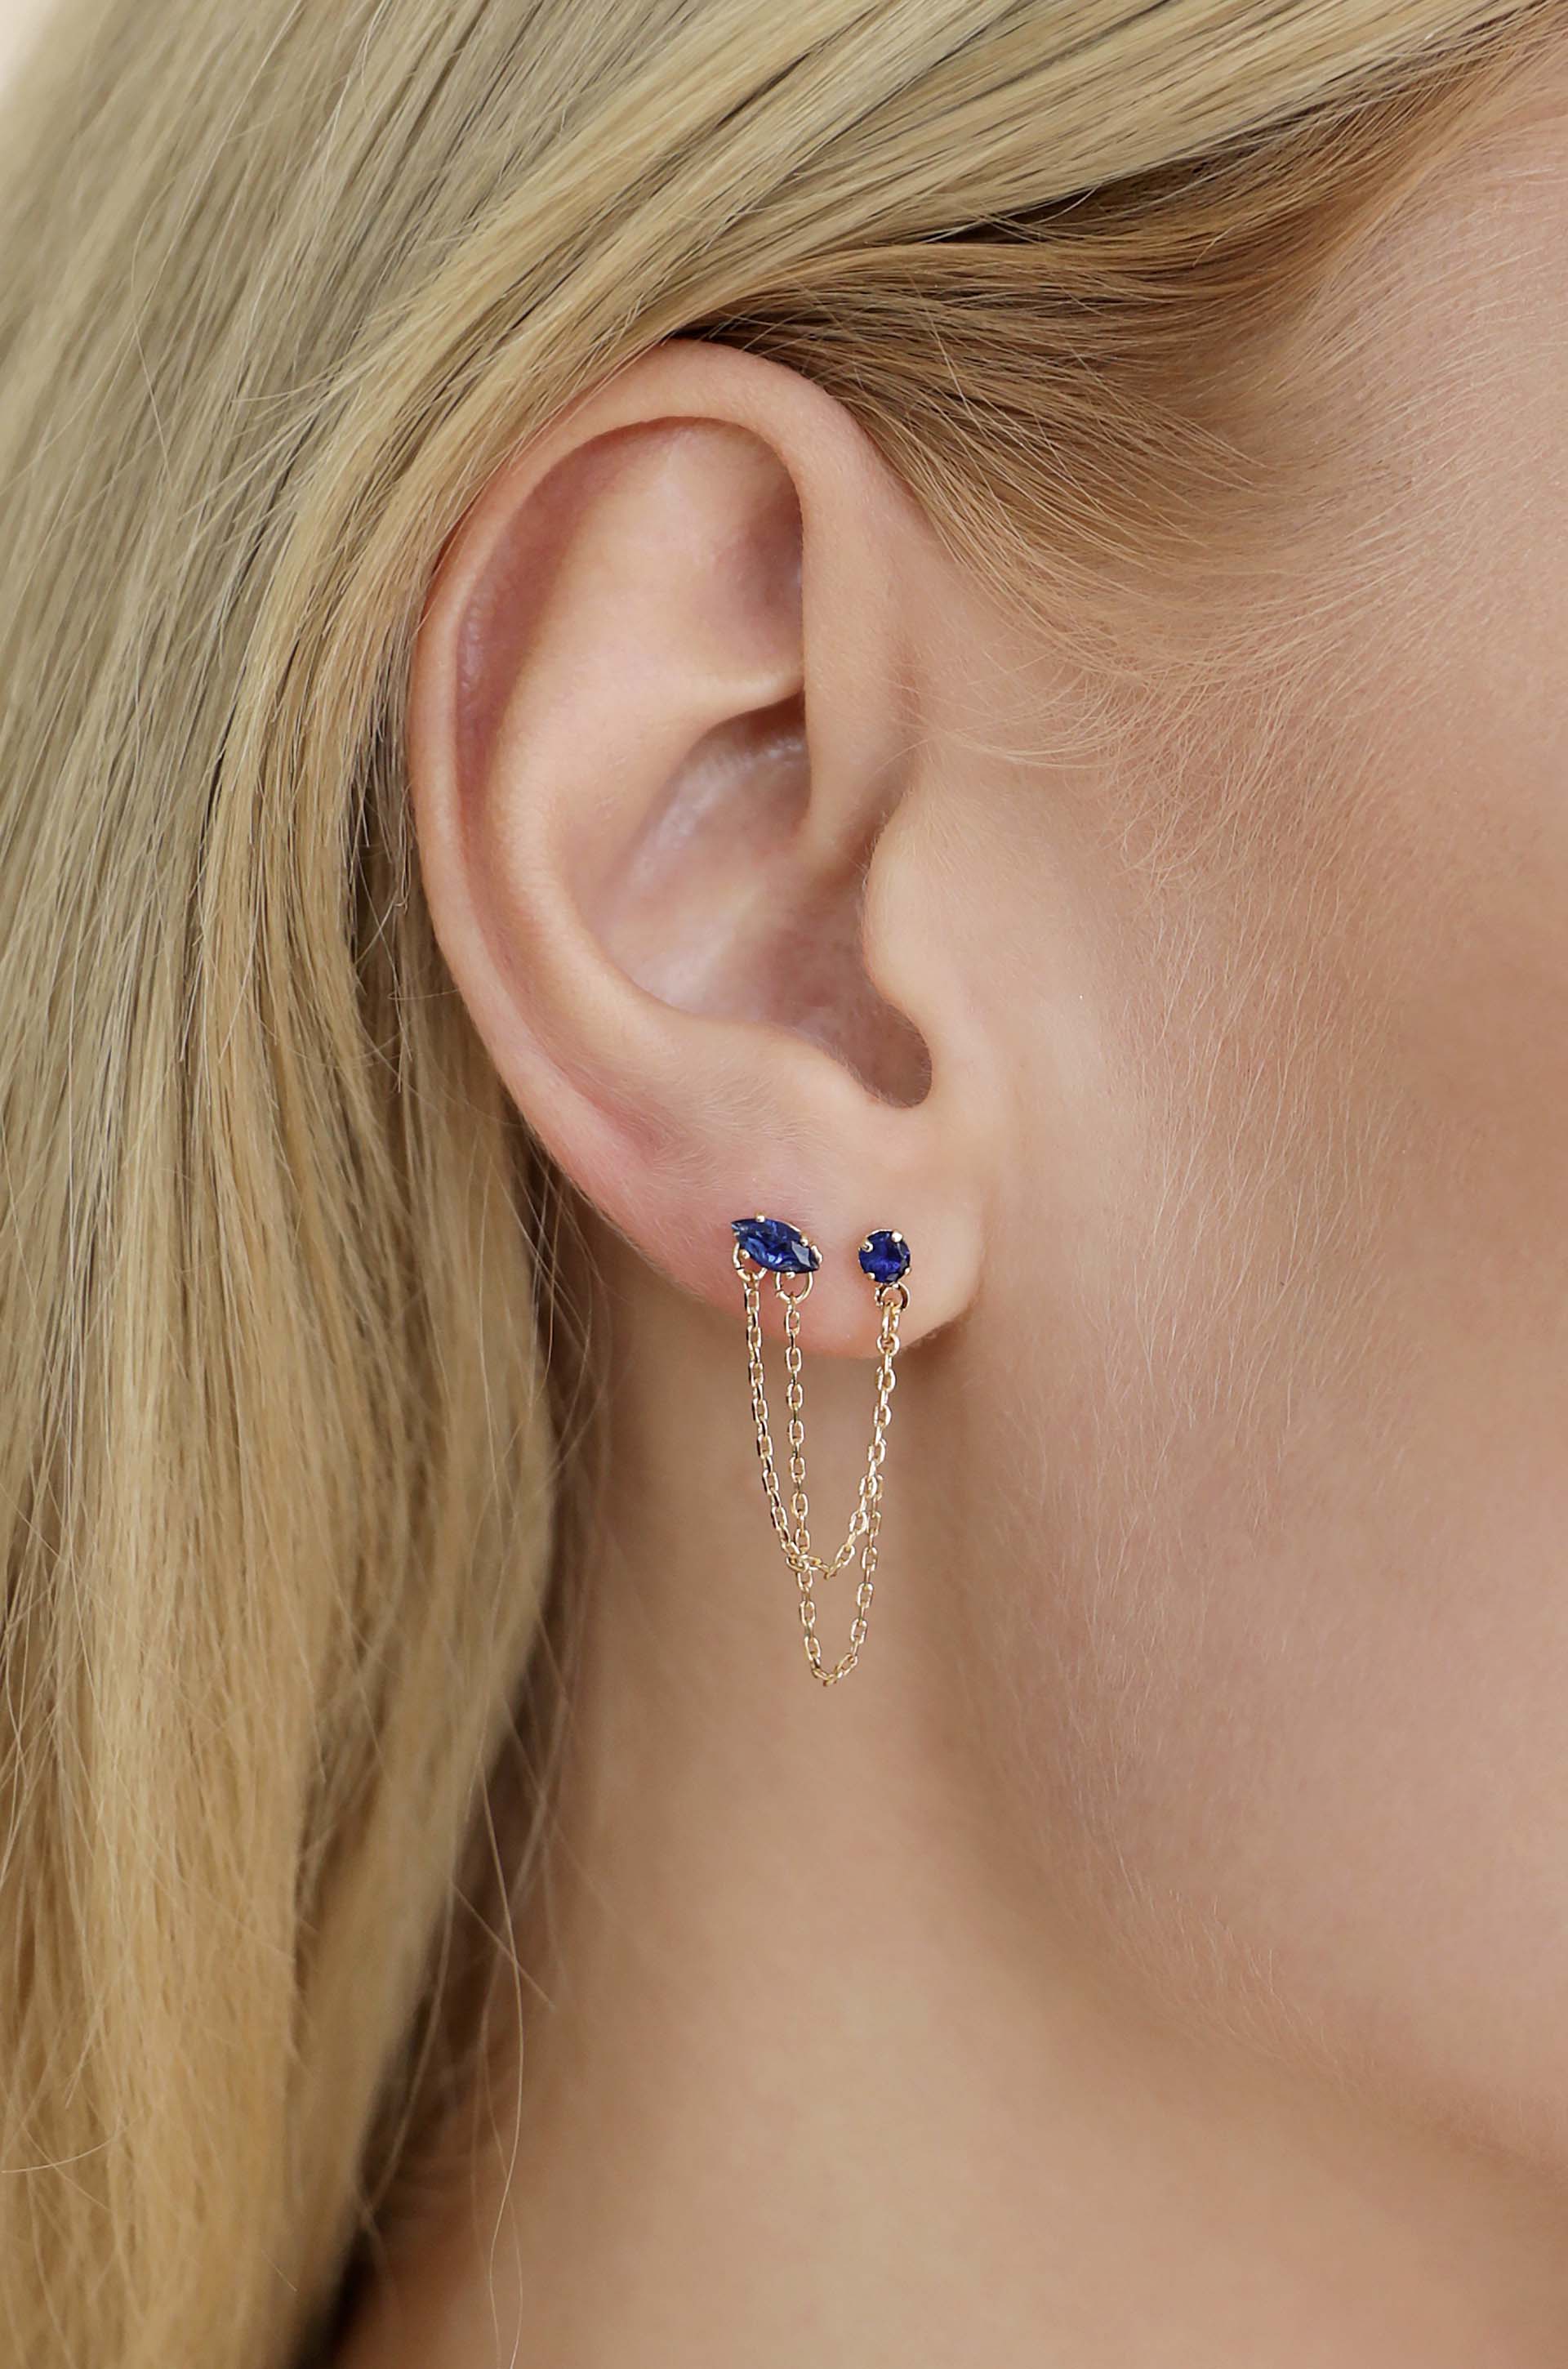 Rhinestone Chain Earrings - Two Hole Piercing Earring Ear Buckle